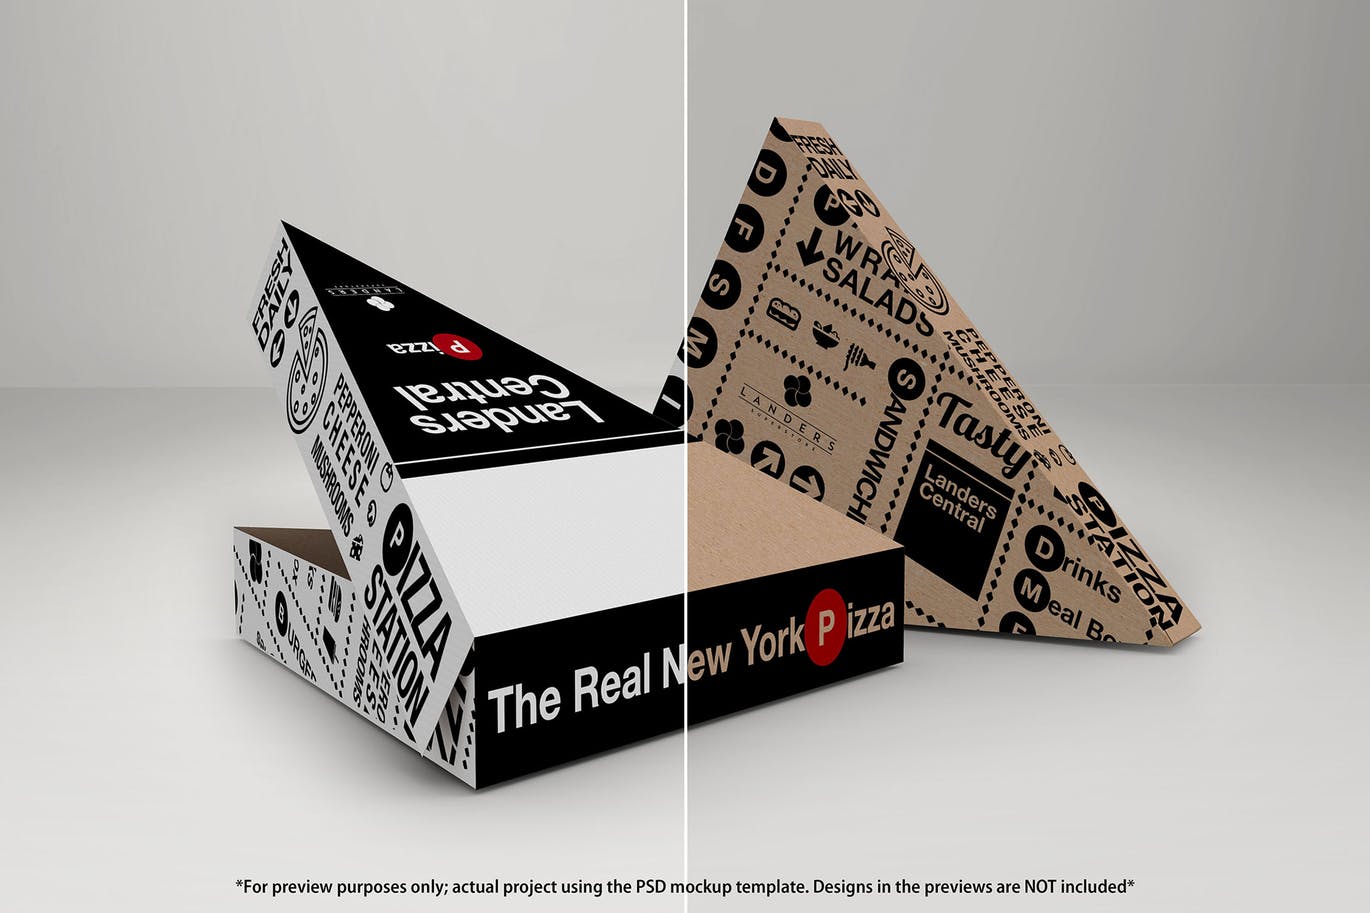 肯德基麦当劳KFC快餐外卖盒包装样机展示模型mockups大集合插图(2)